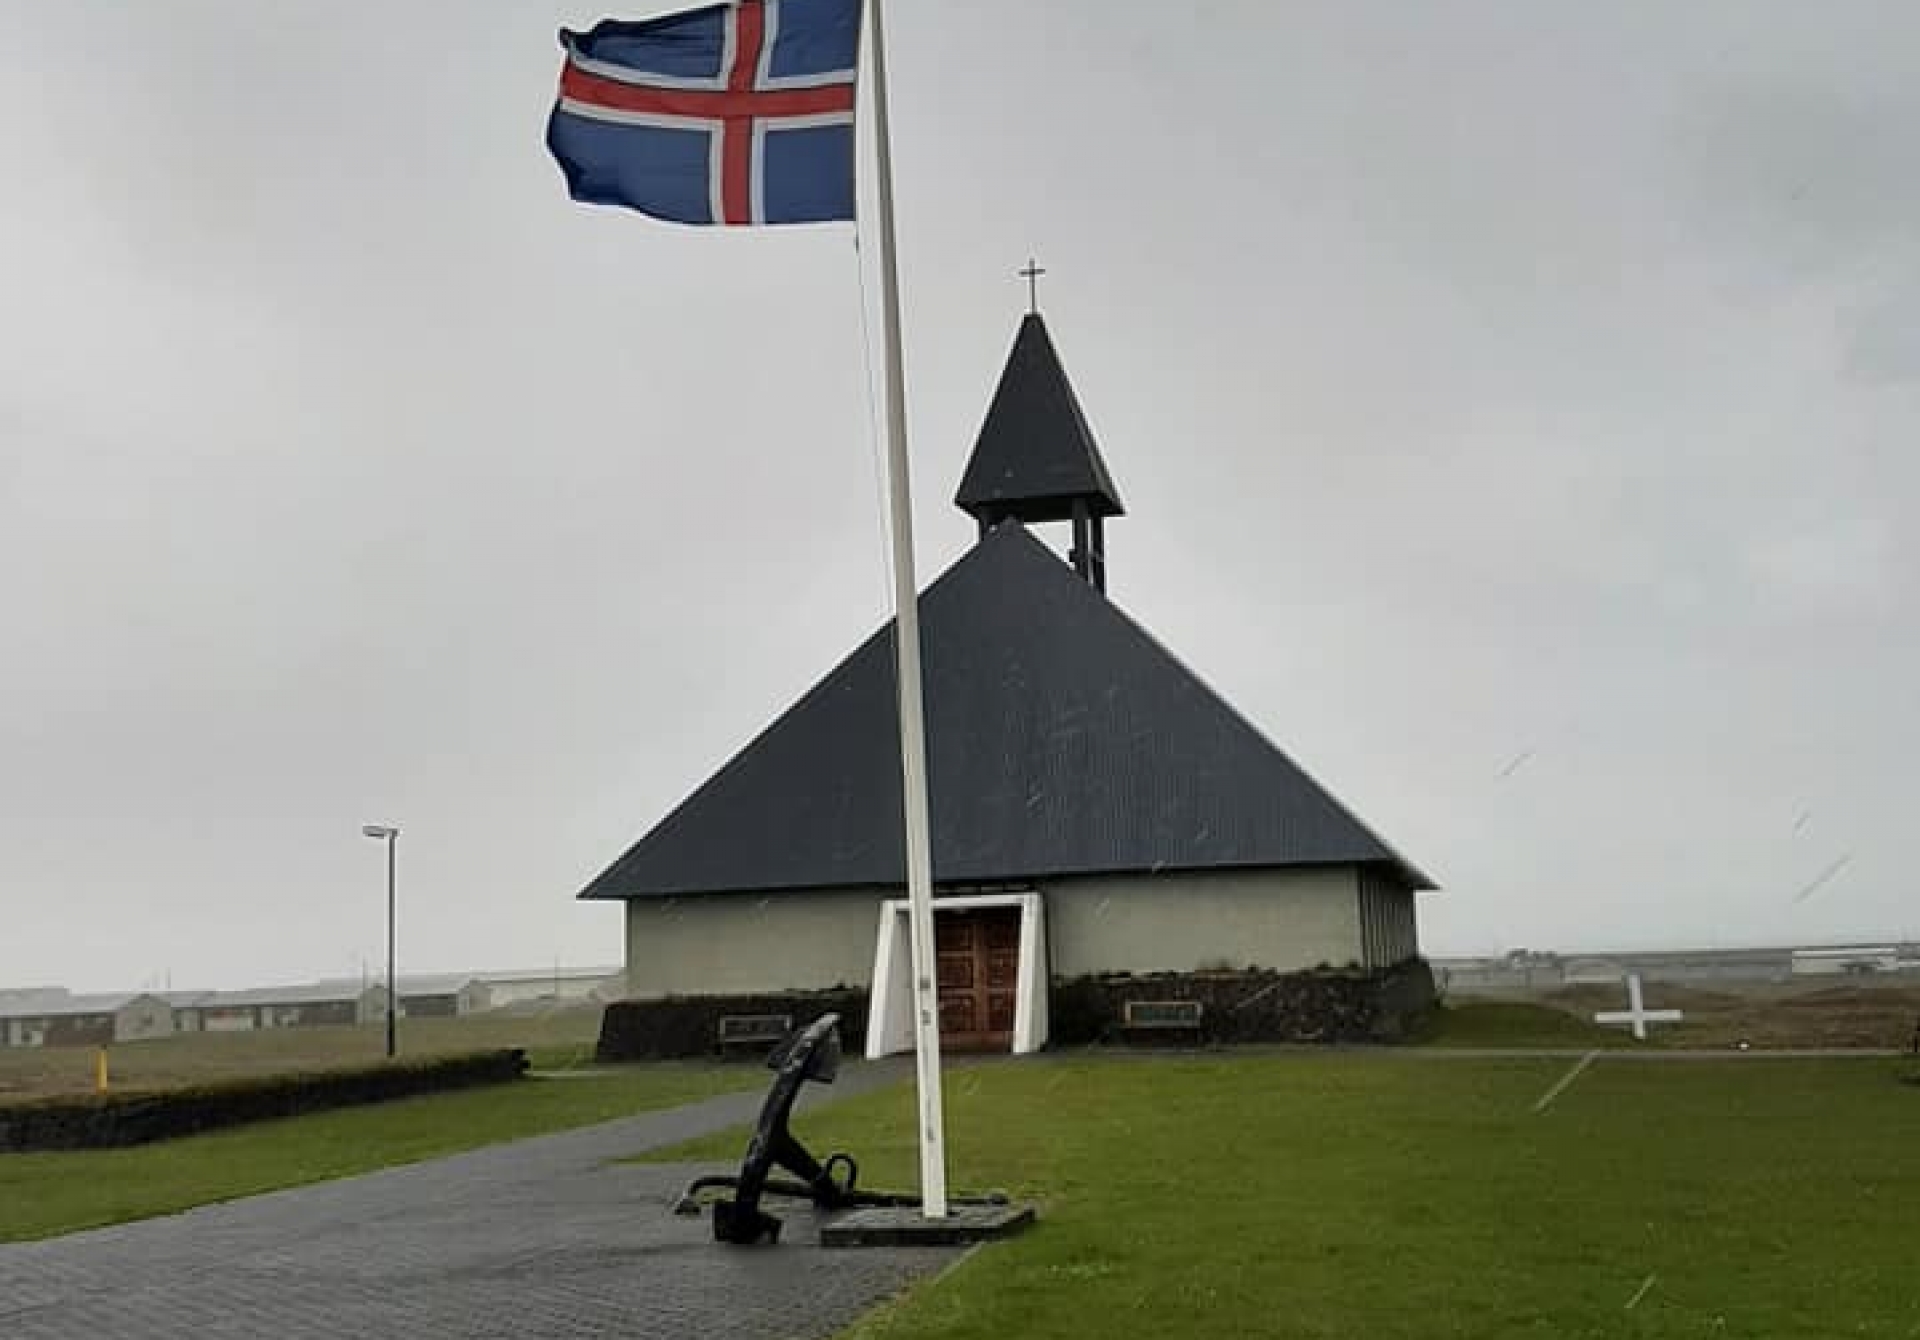 Aðalsafnaðarfundur Þorláks- og Hjallasóknar